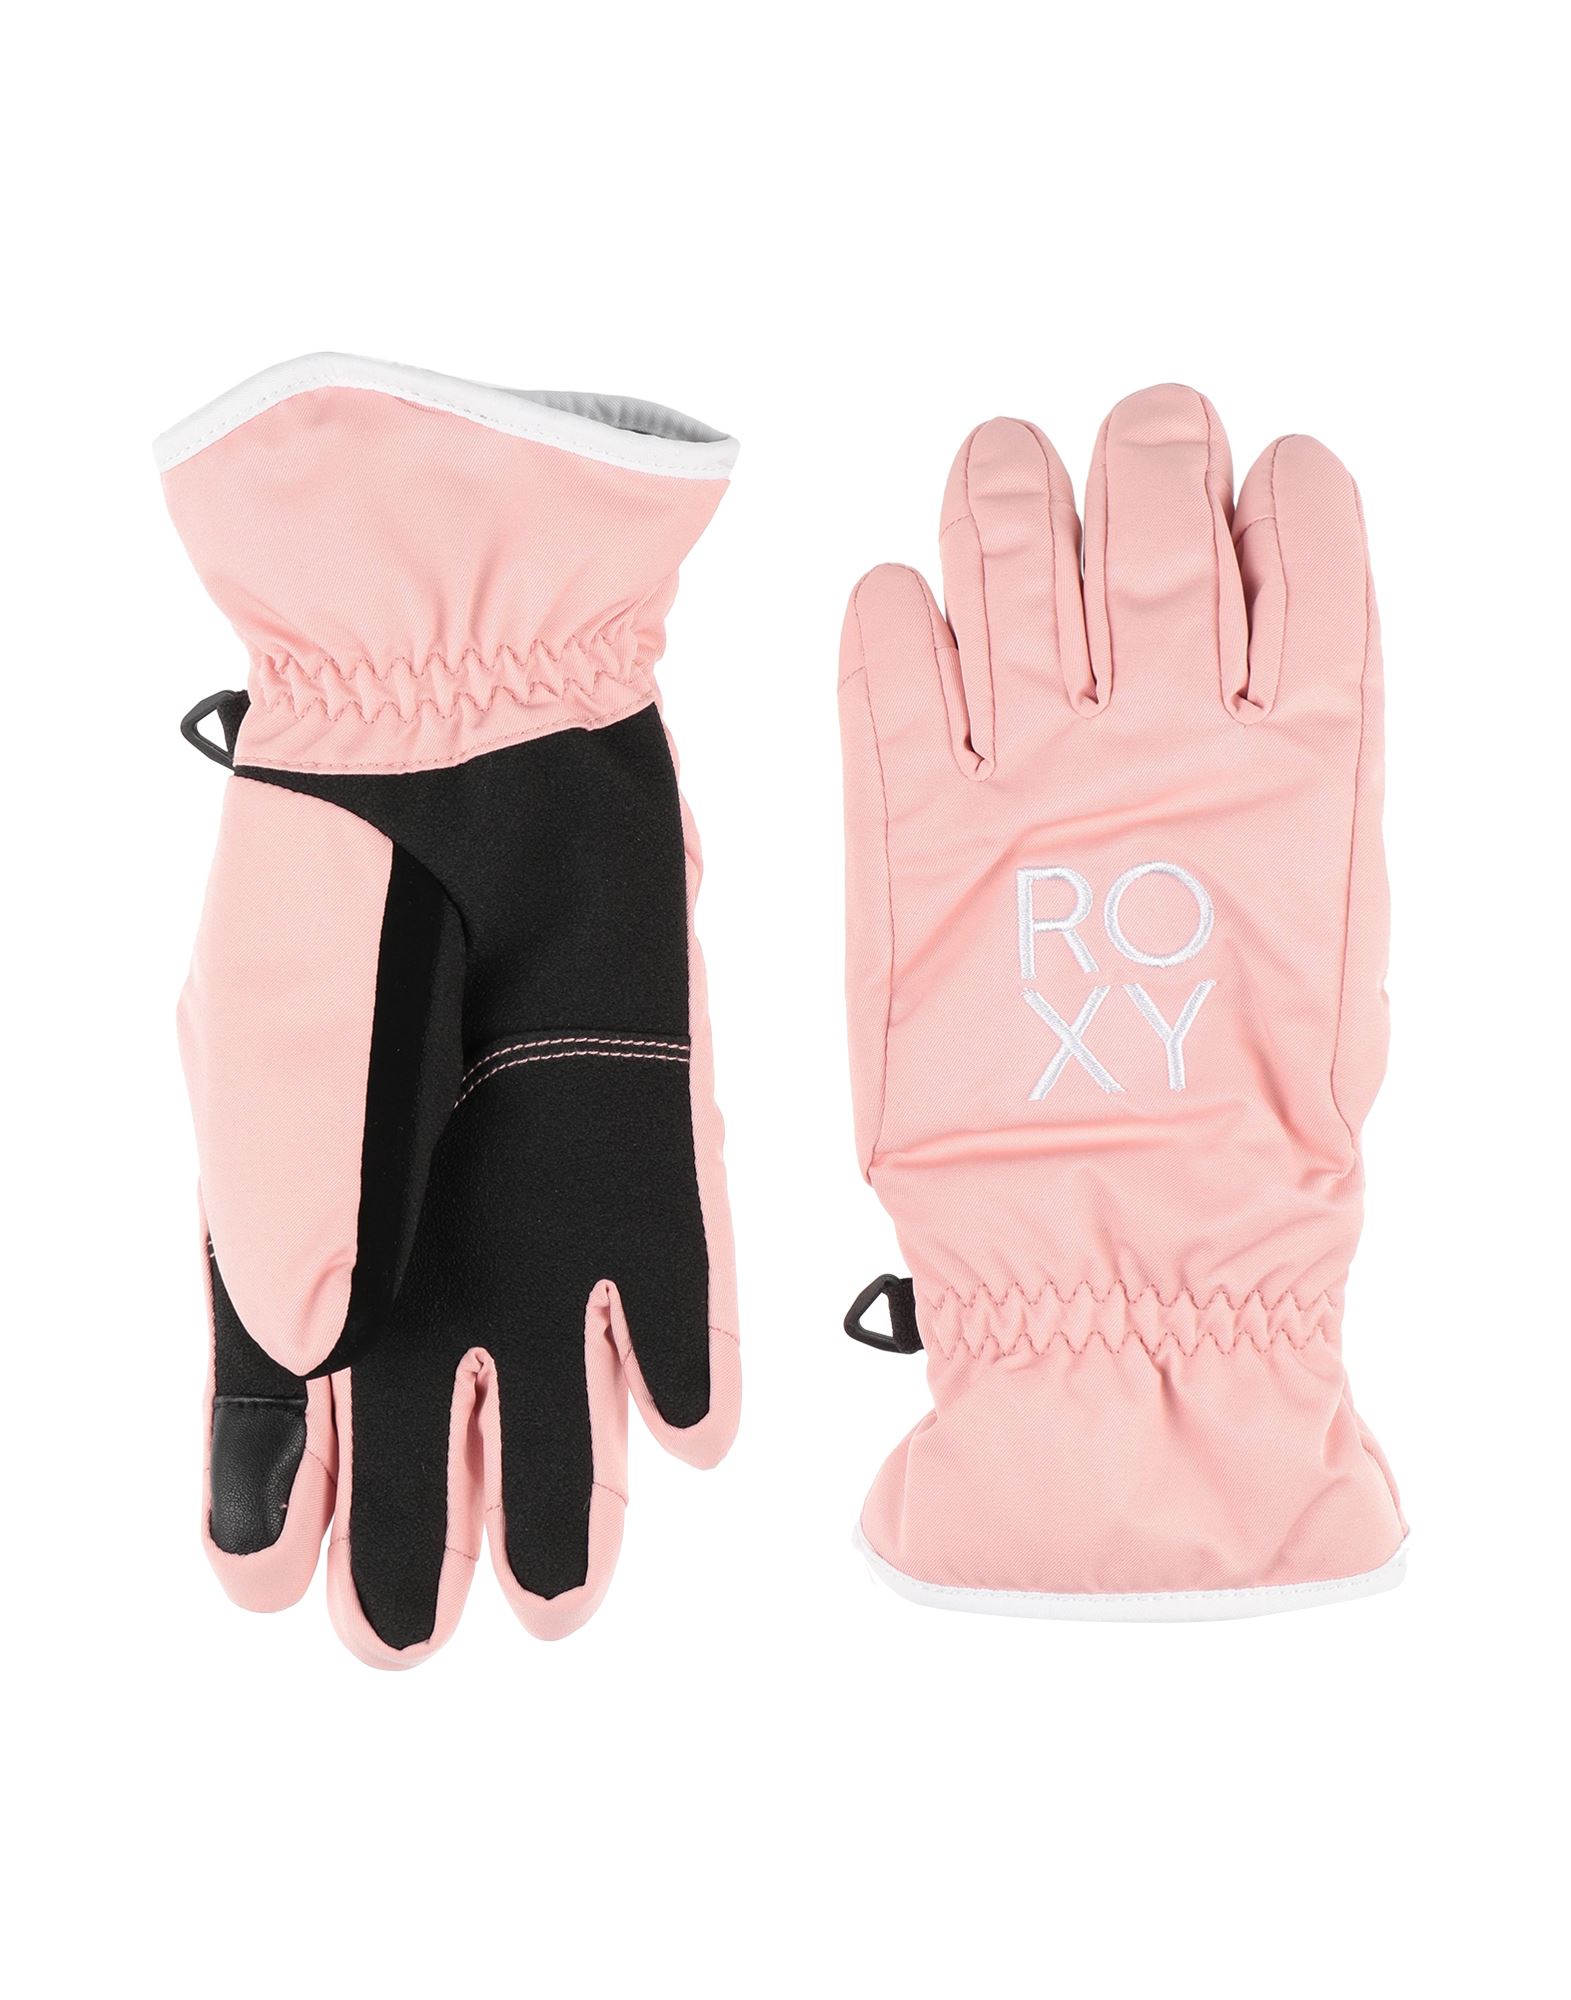 Roxy Kids' Gloves In Pink